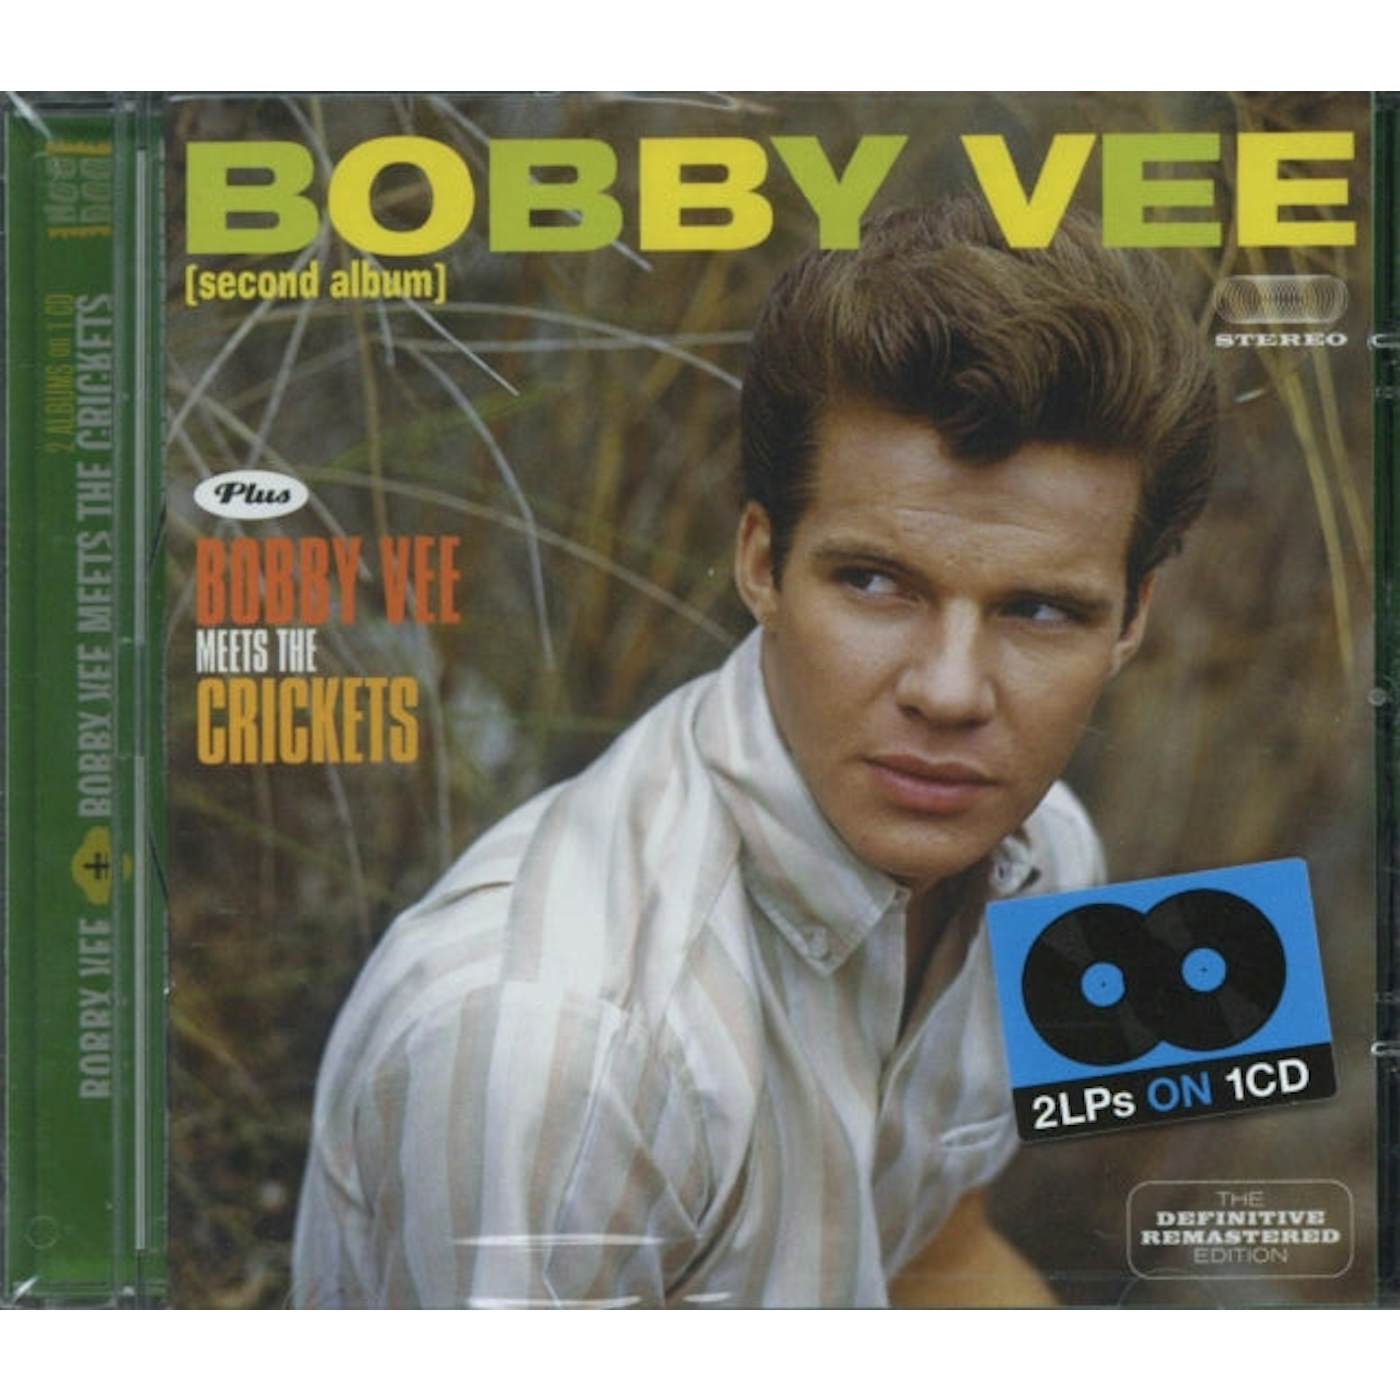 Bobby Vee CD - Bobby Vee / Bobby Vee Meets The Crickets